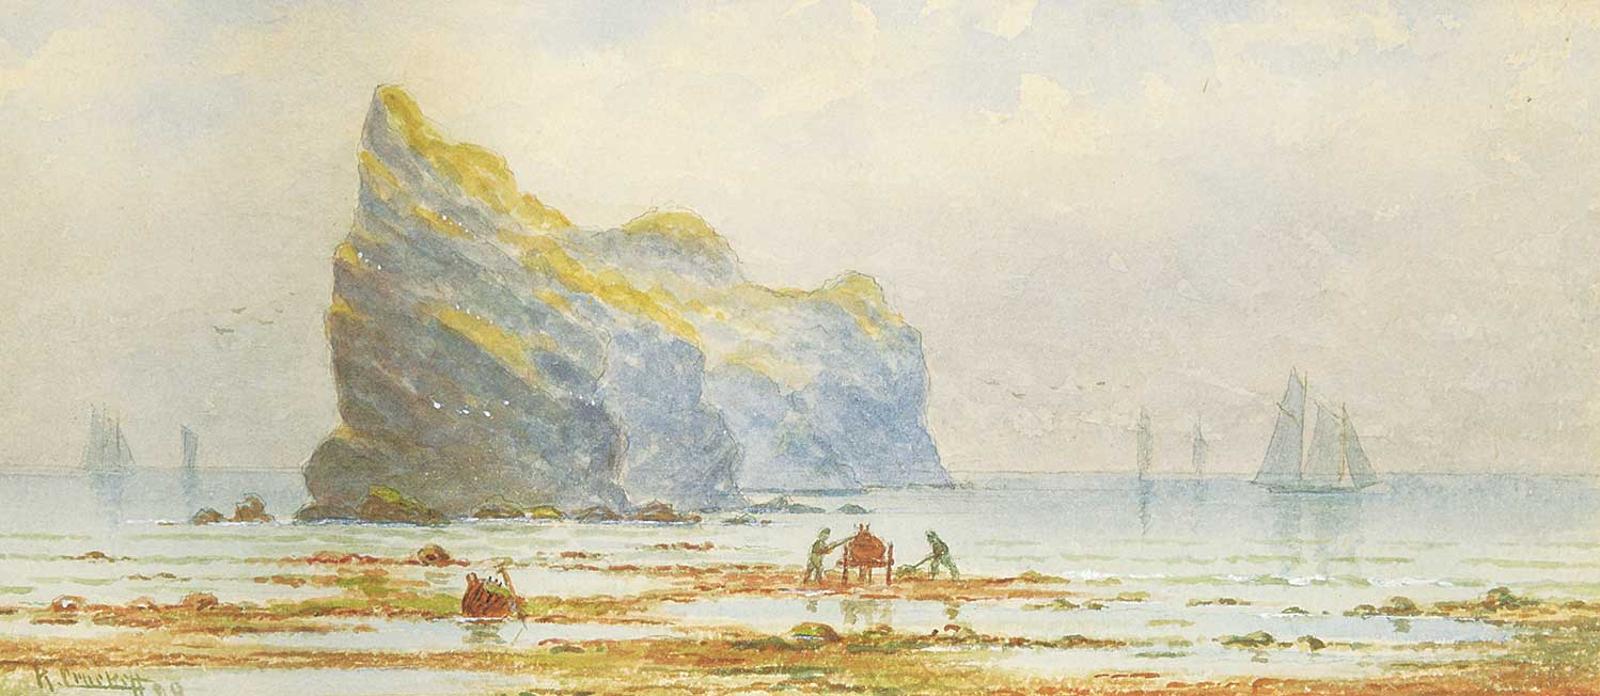 Robert Crockett - Gathering Kelp, Perce Rock, 1879